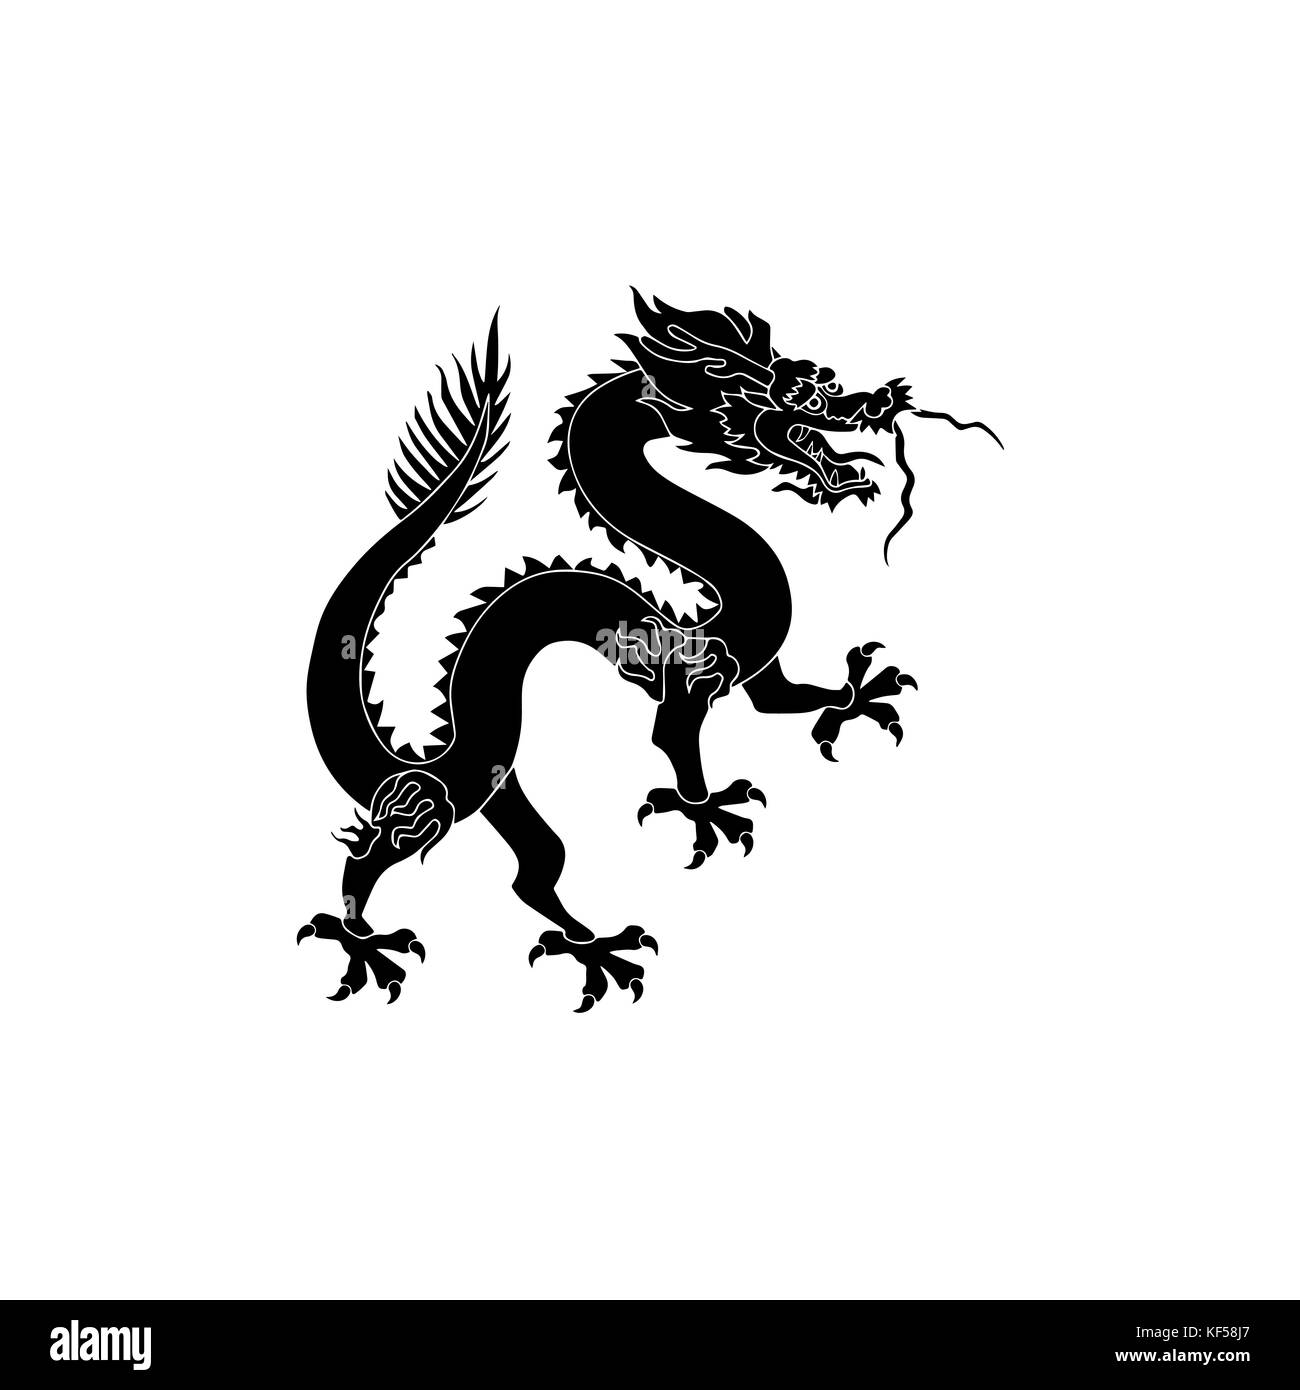 Dragon vector design Stock Photo